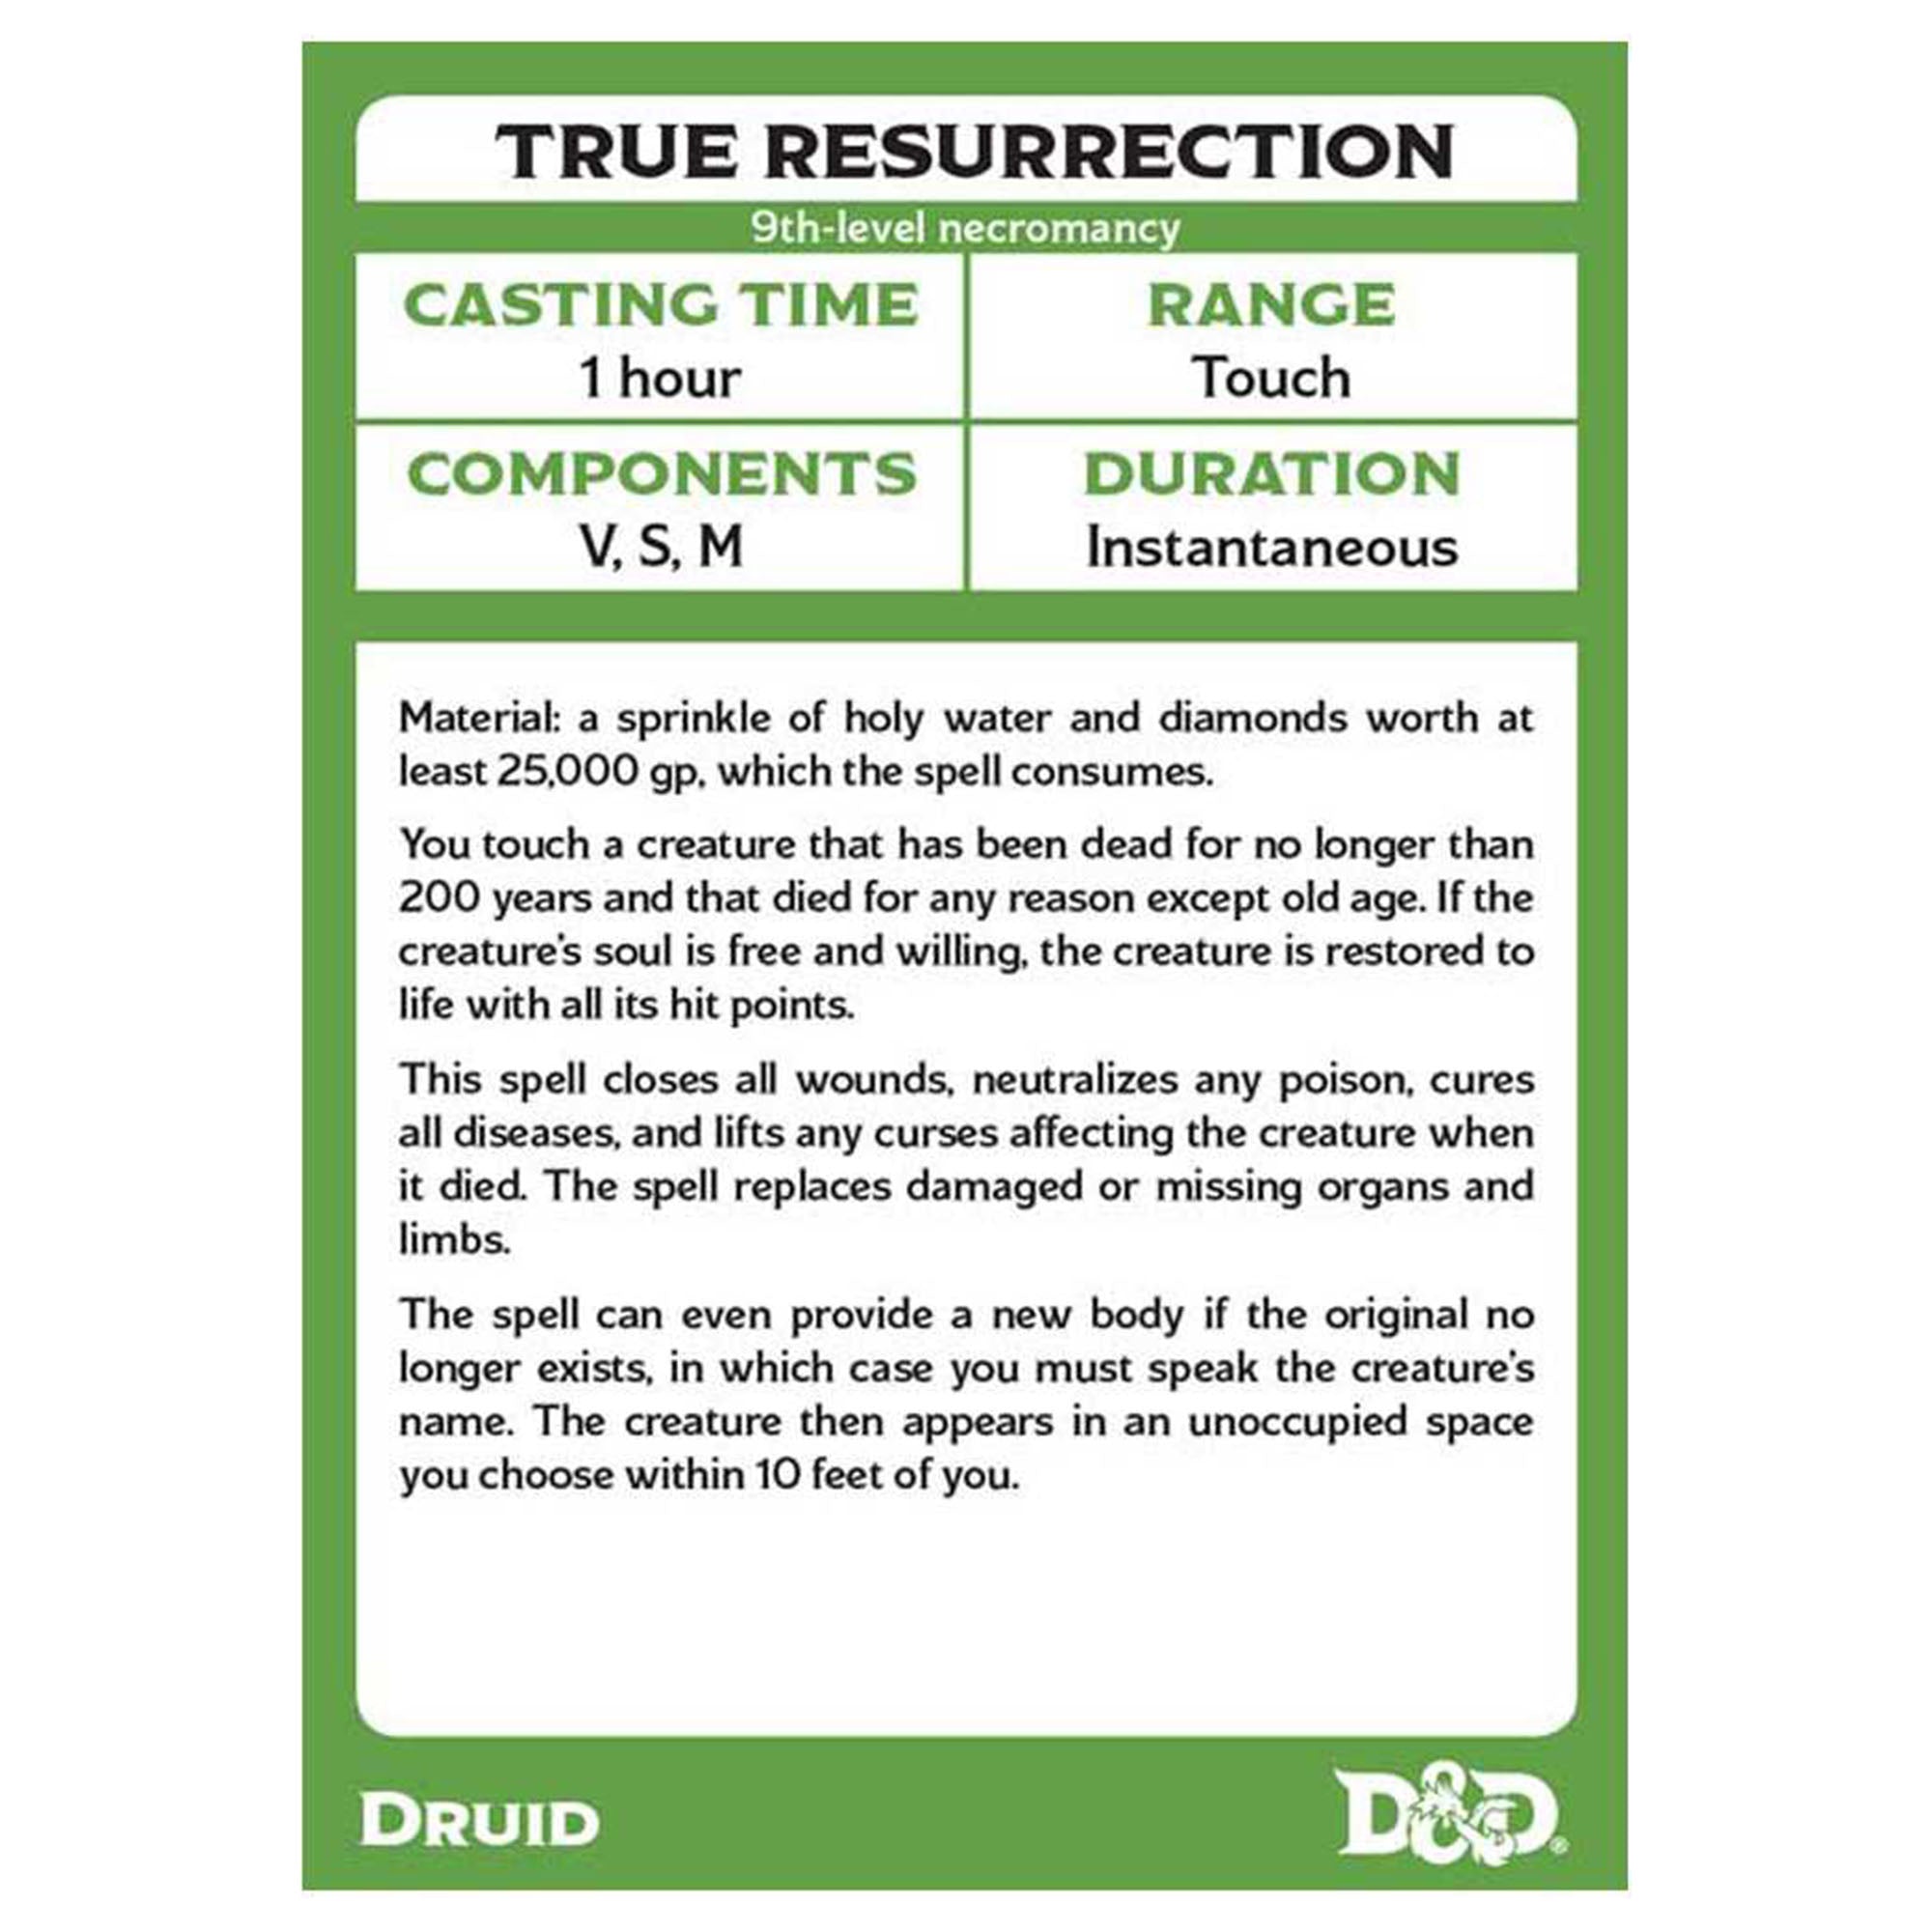 D&D Spellbook Cards - Druid